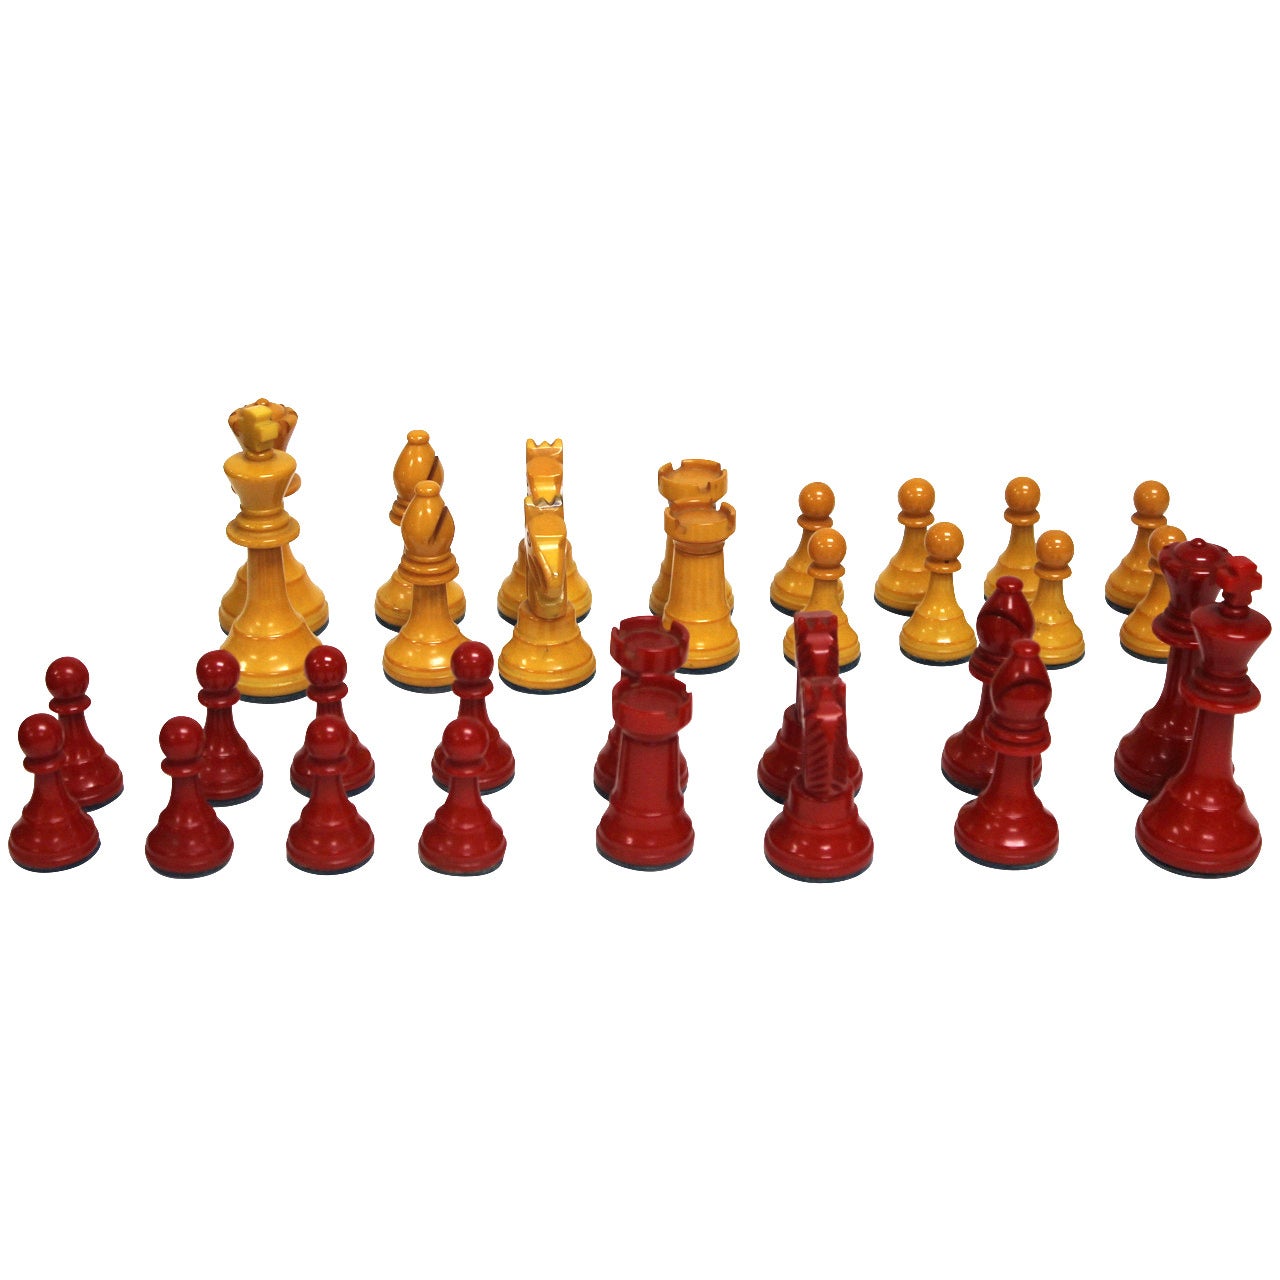 Bakelite Chess Set